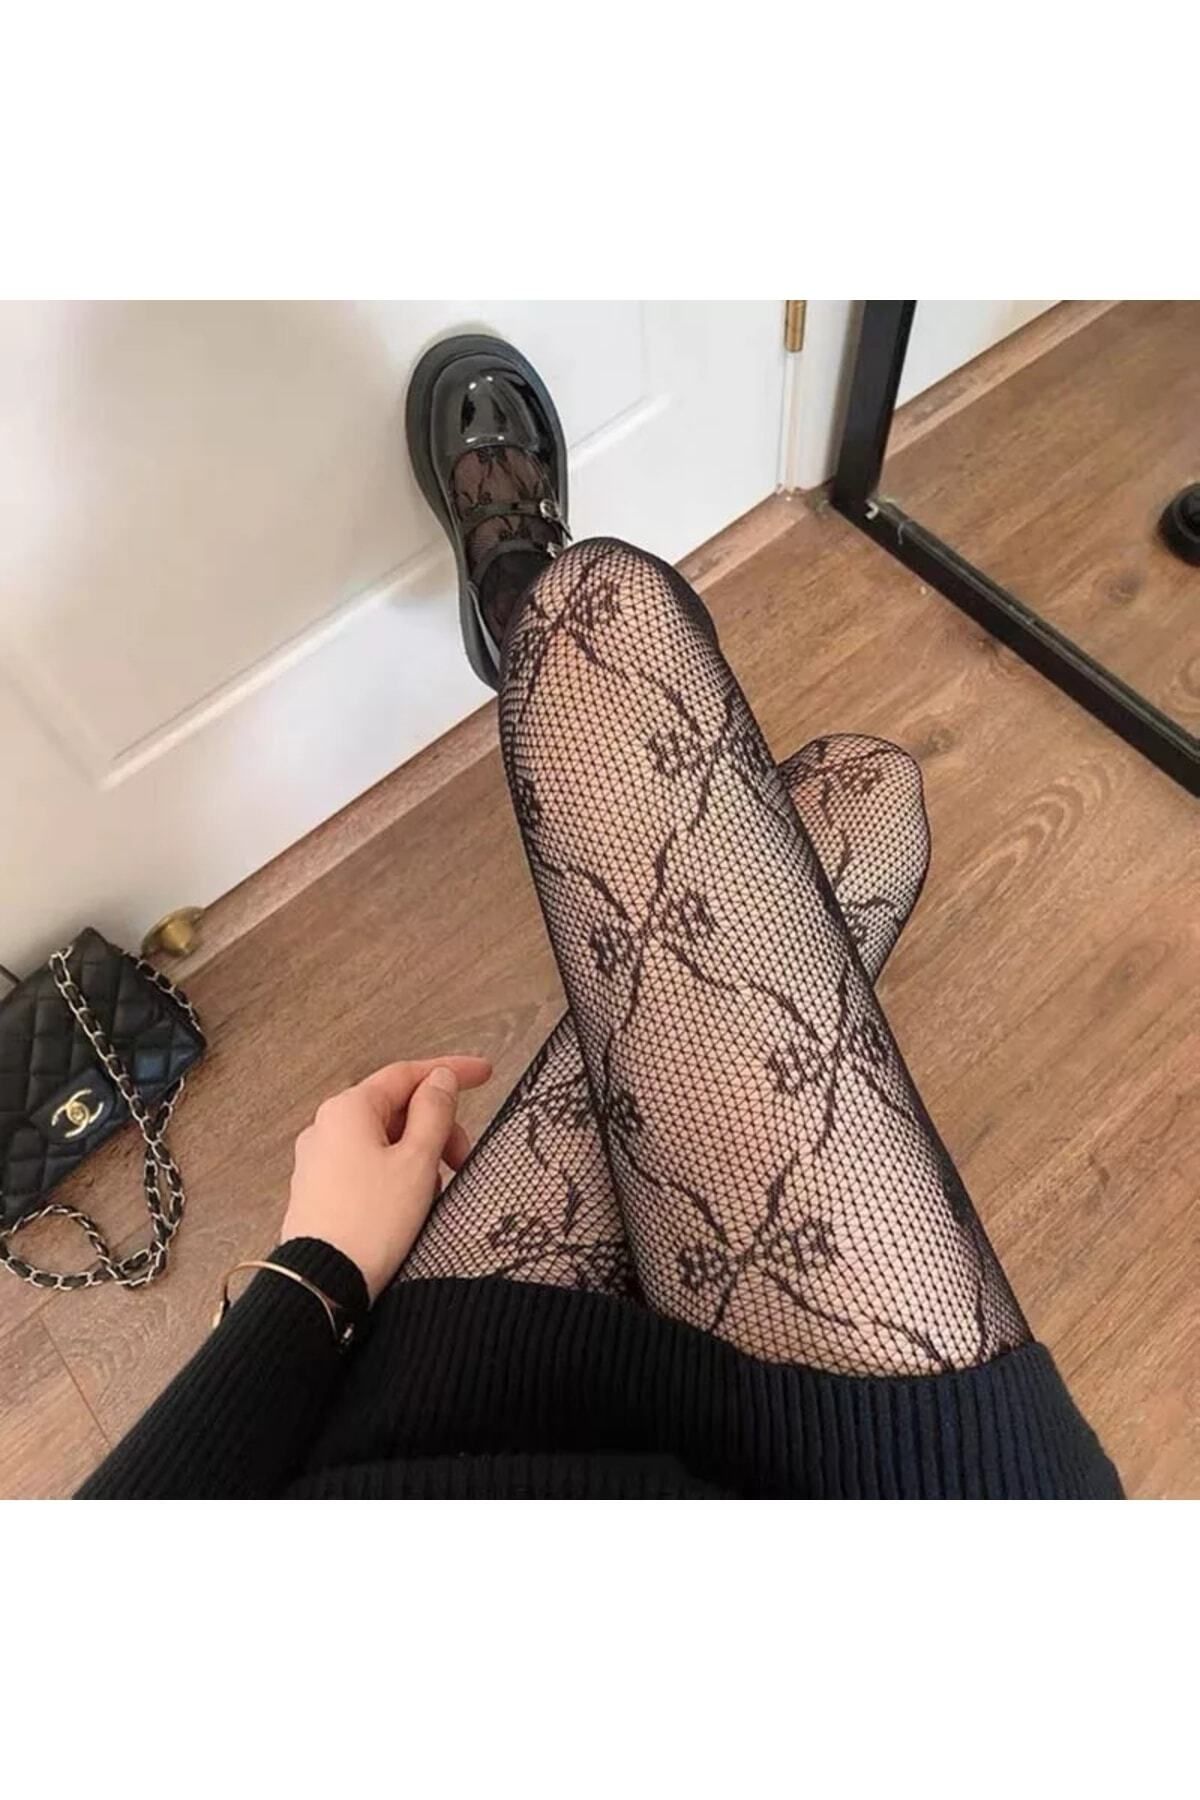 VEGAROKS Lolita Kurdele Desenli Ithal Siyah Külotlu Çorap